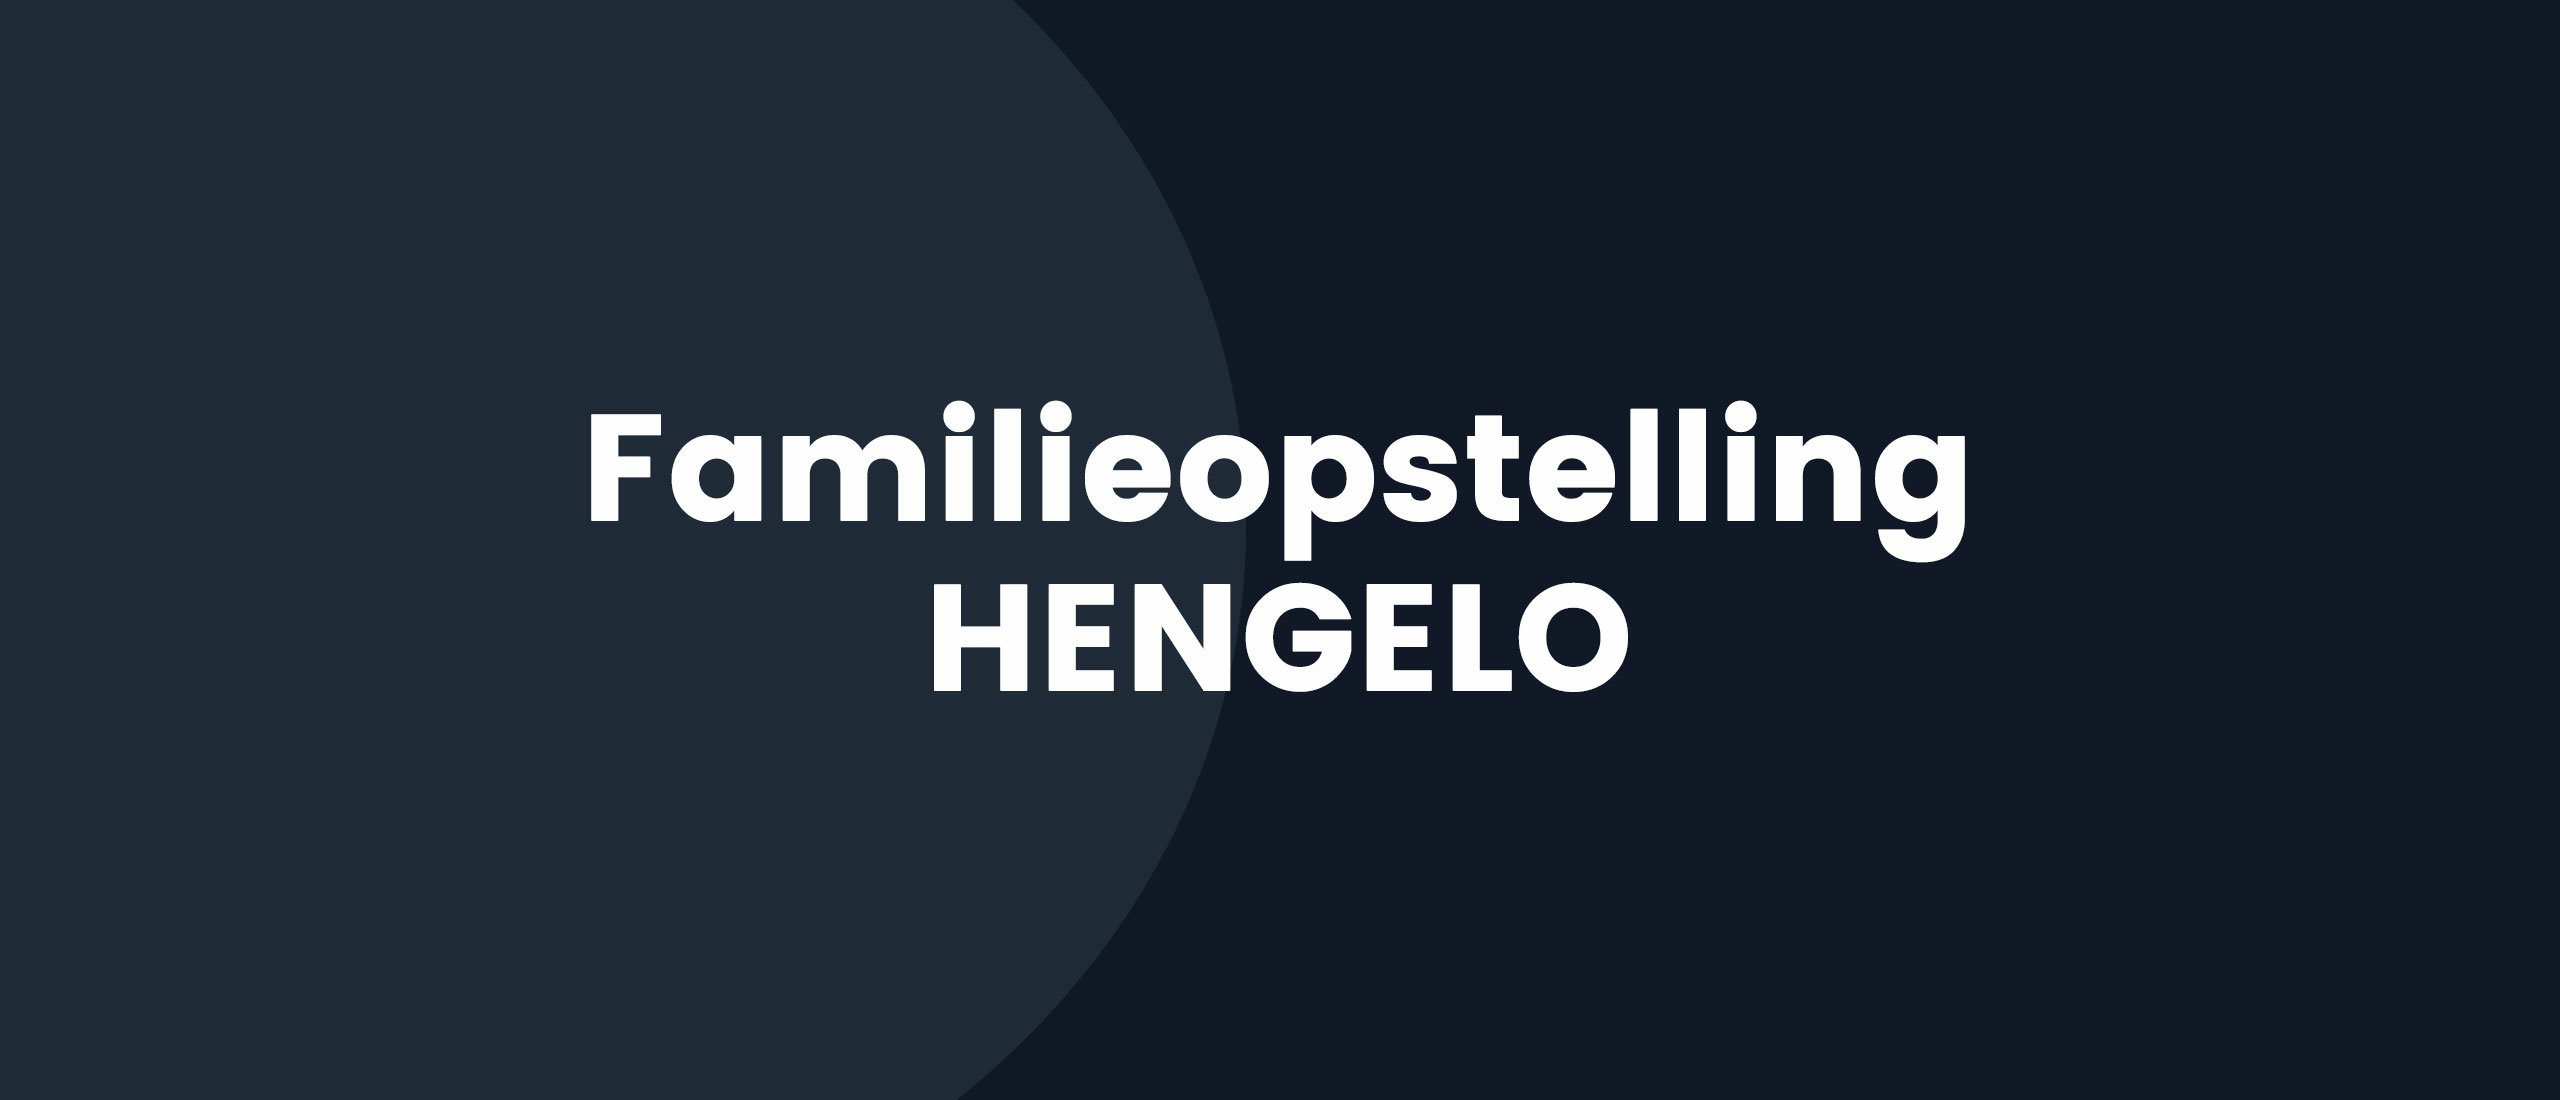 Familieopstelling Hengelo